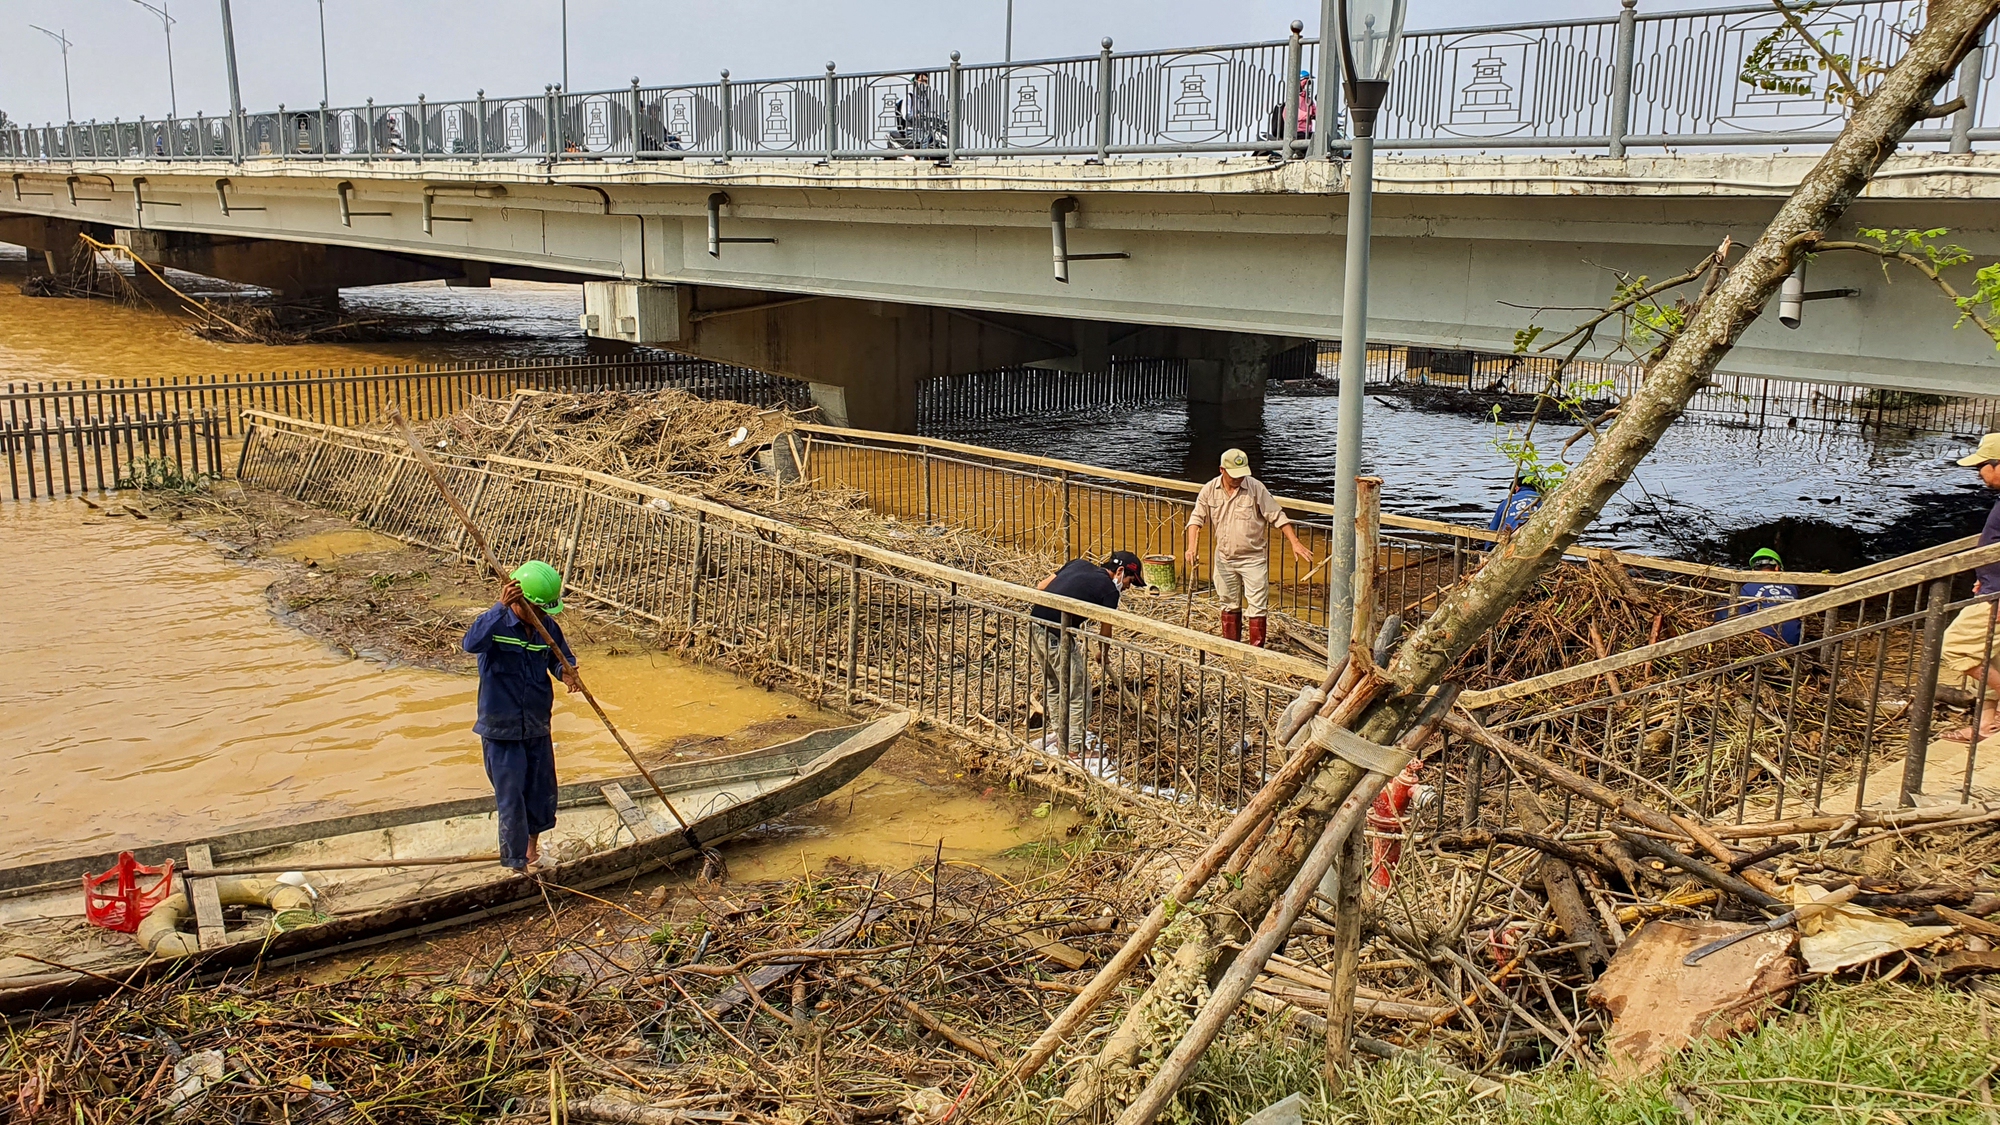 Rác dồn đống bên cầu gỗ lim trên sông Hương, lực lượng chức năng ra sức dọn dẹp - Ảnh 3.